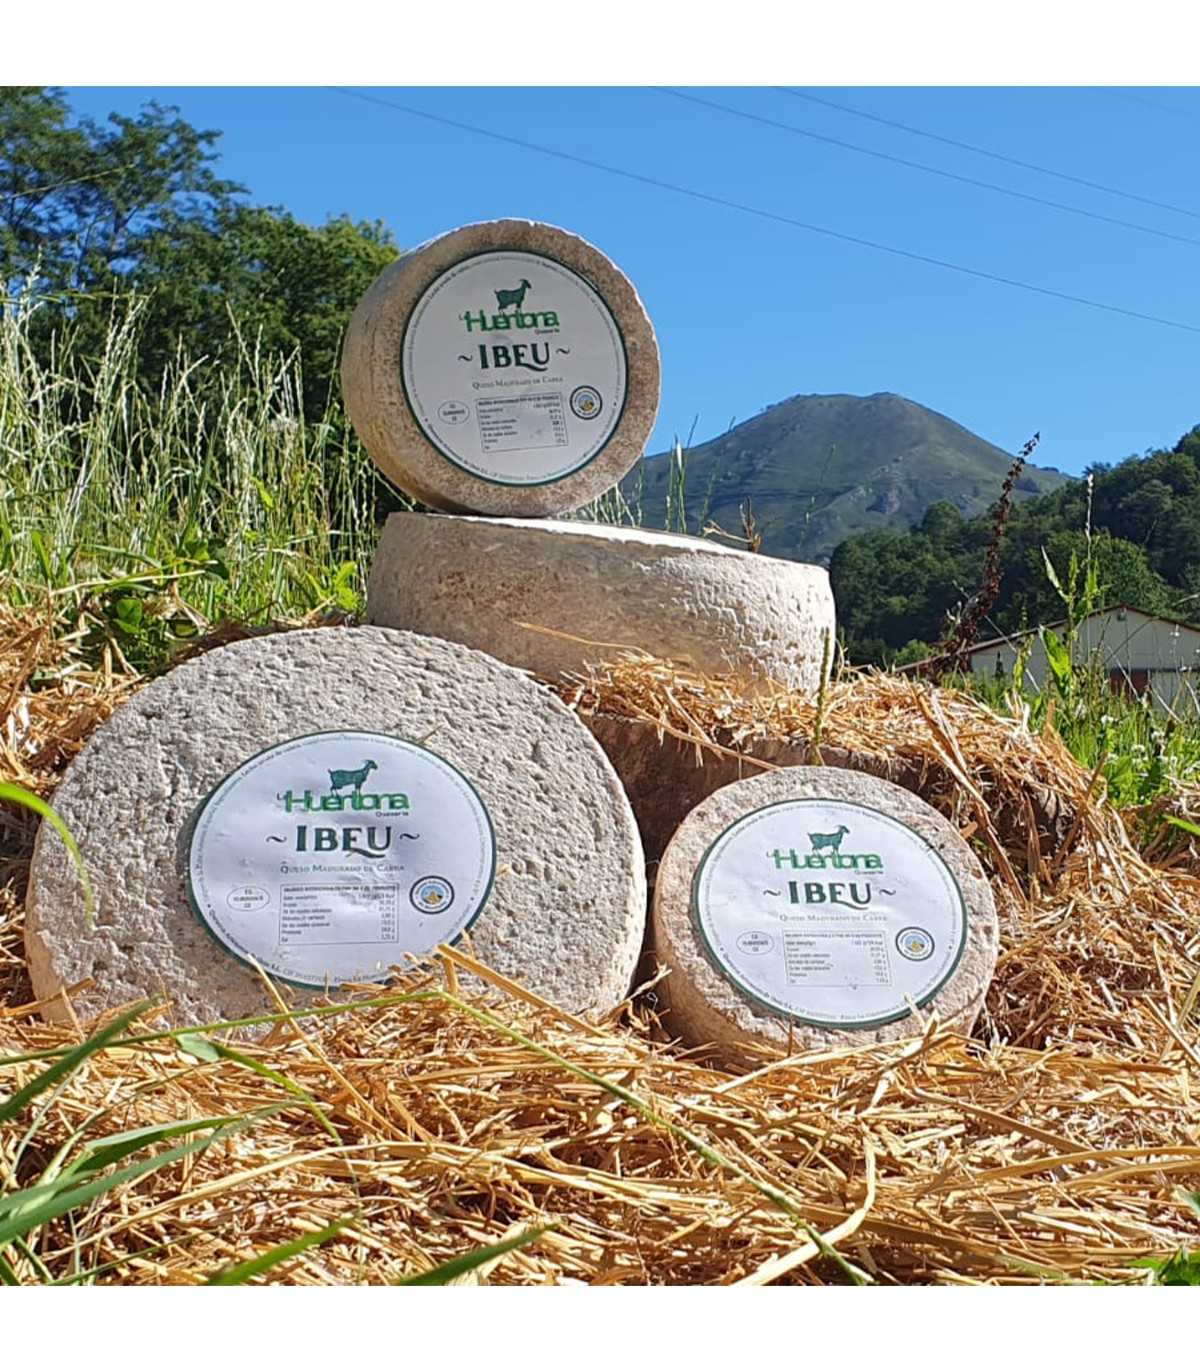 LA HUERTONA 99018 Cuña de queso Asturiano IBEU de leche de cabra - ambiente